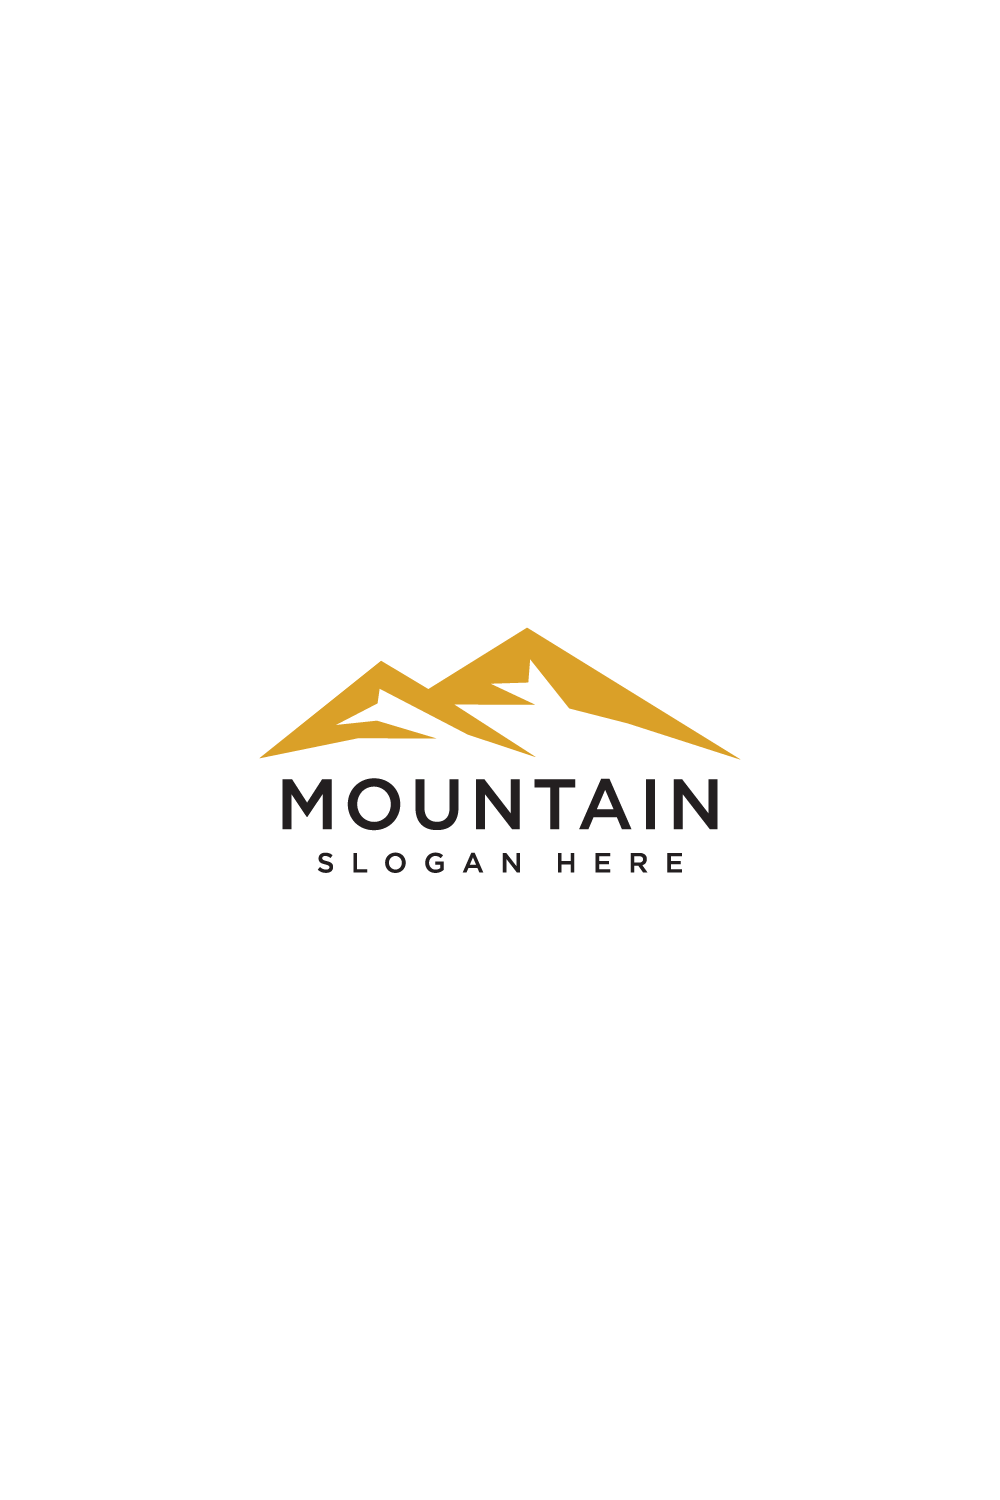 mountain logo vector design template pinterest preview image.